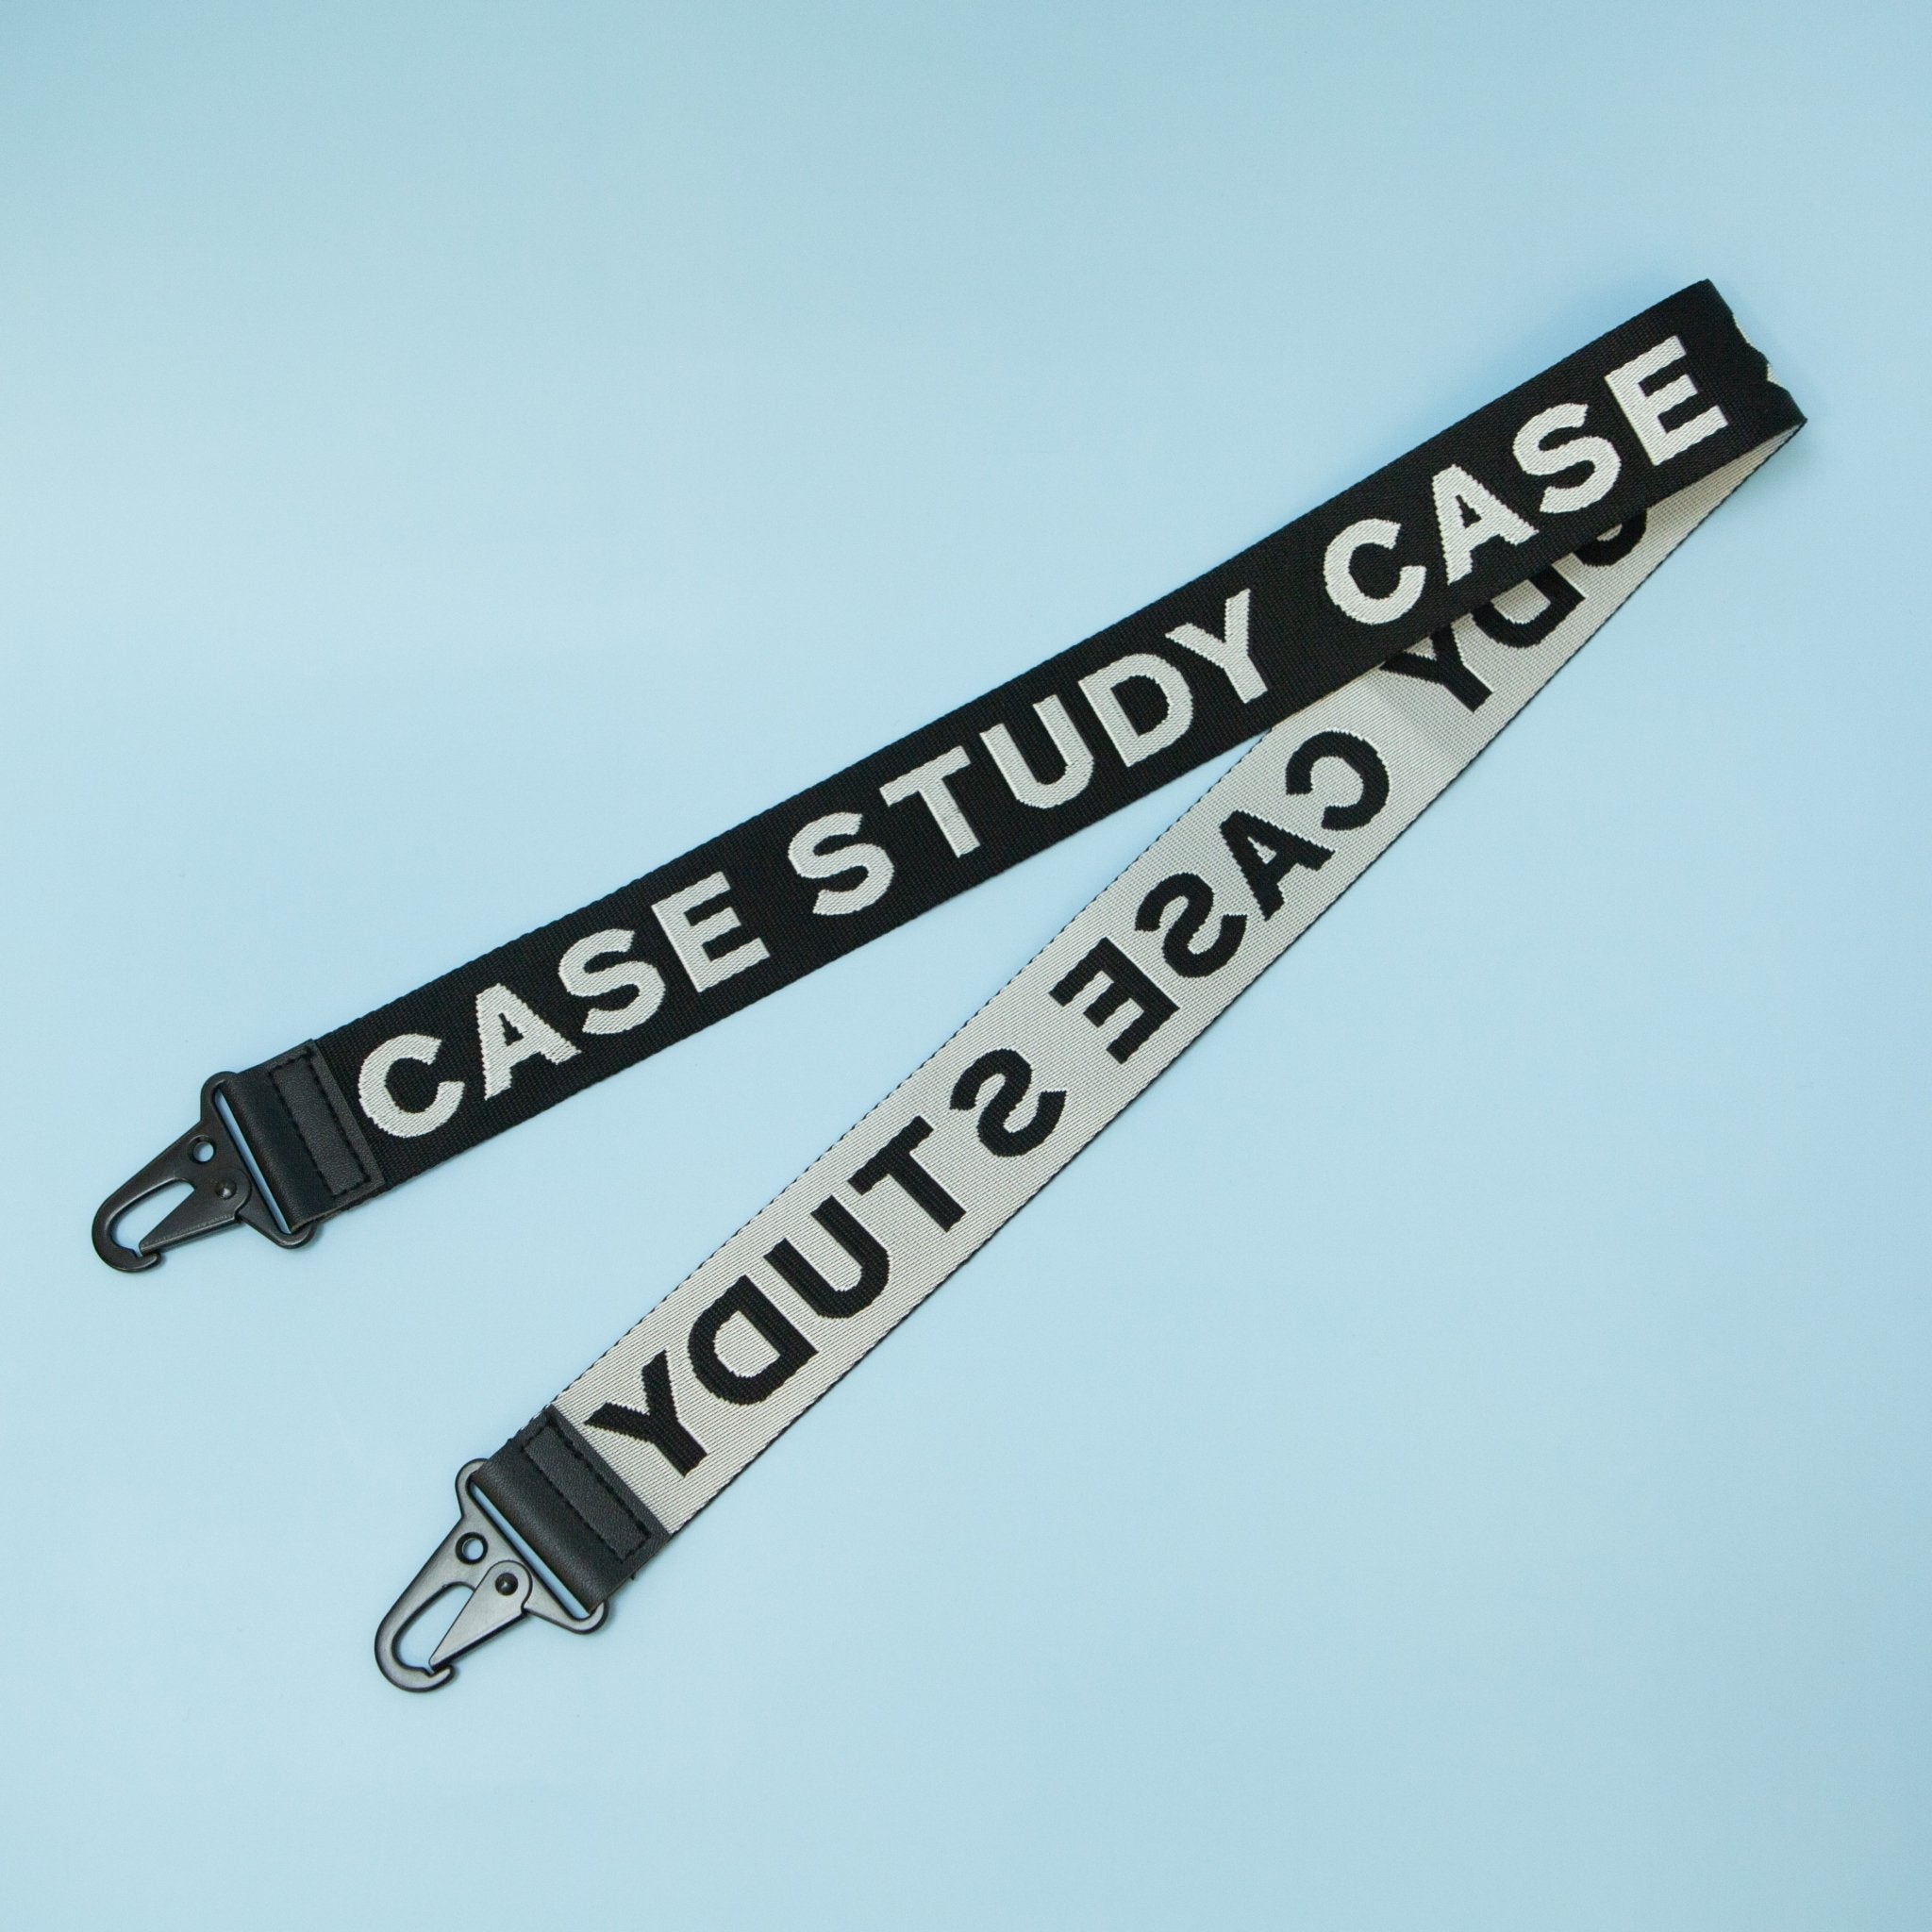 Crossbody Strap / Black + White - Case Study